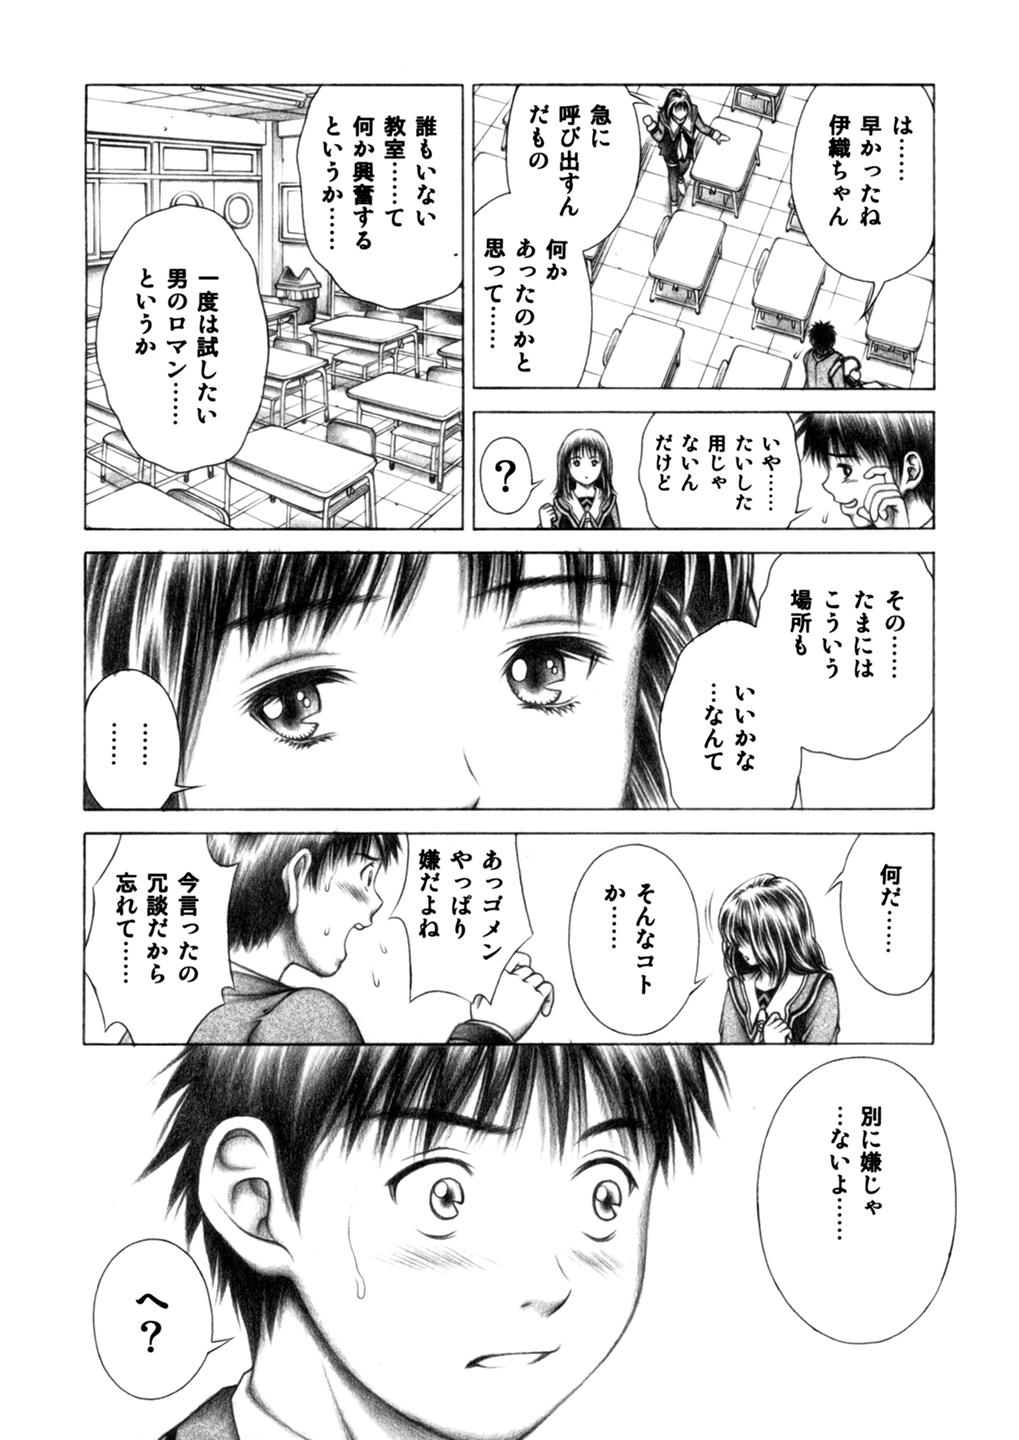 Moan Iori to Fuwafuwarin - Is Oriental - Page 5